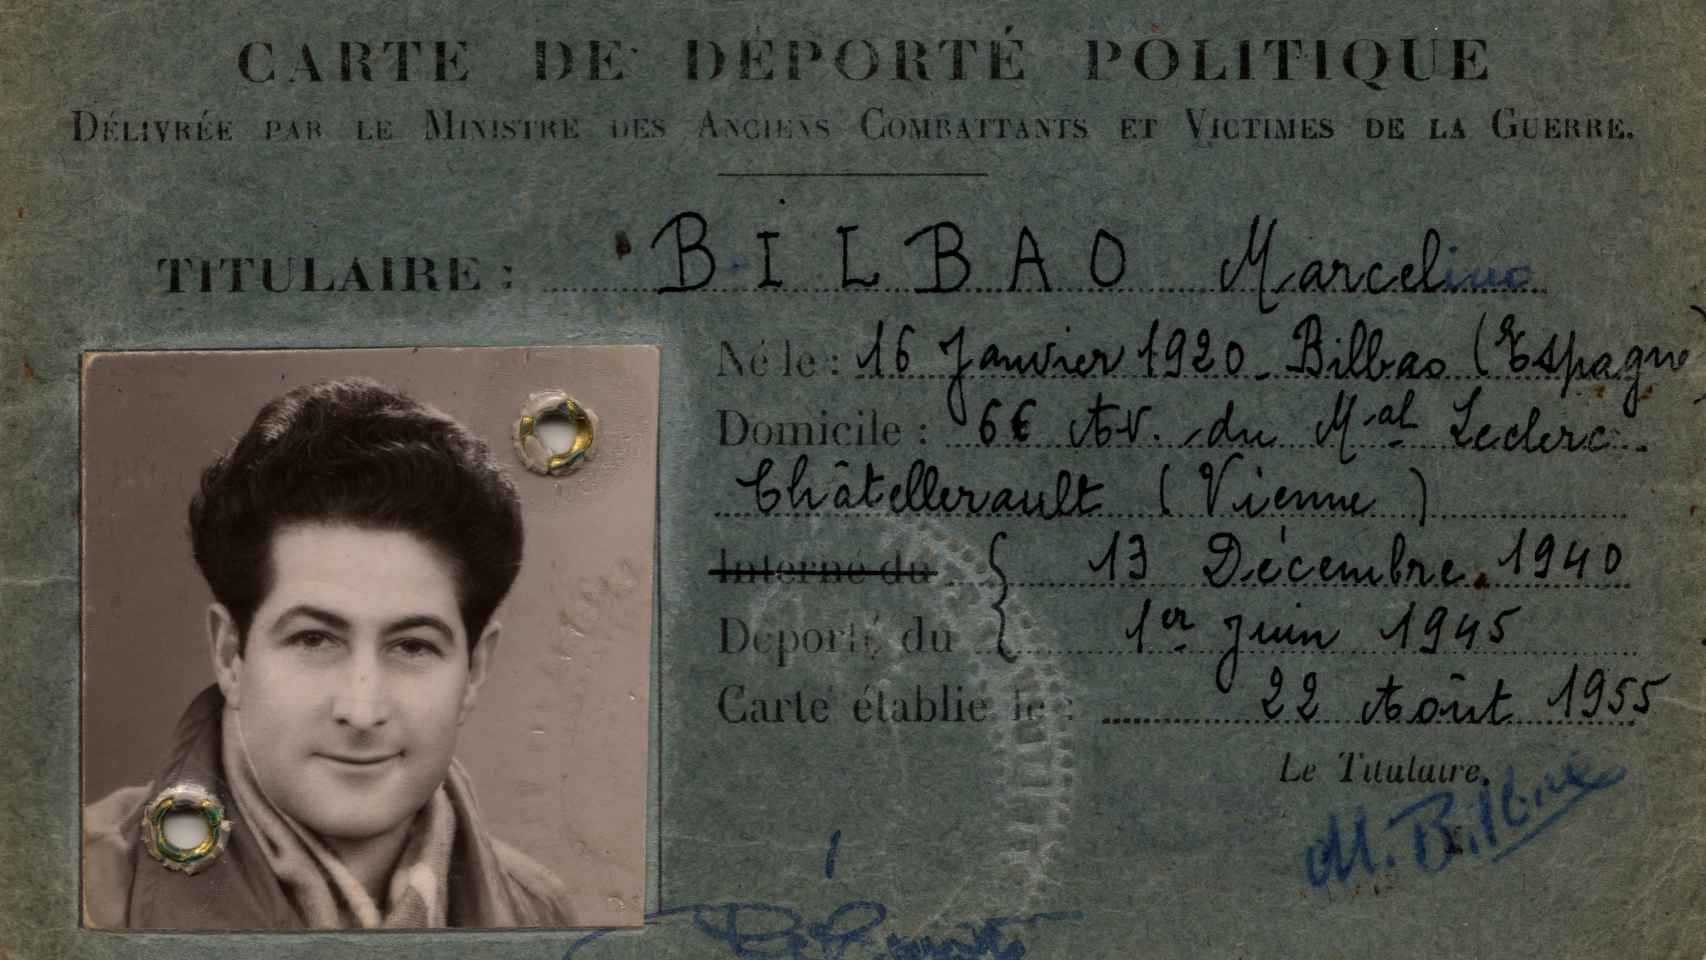 Carné de deportado de Marcelino Bilbao.